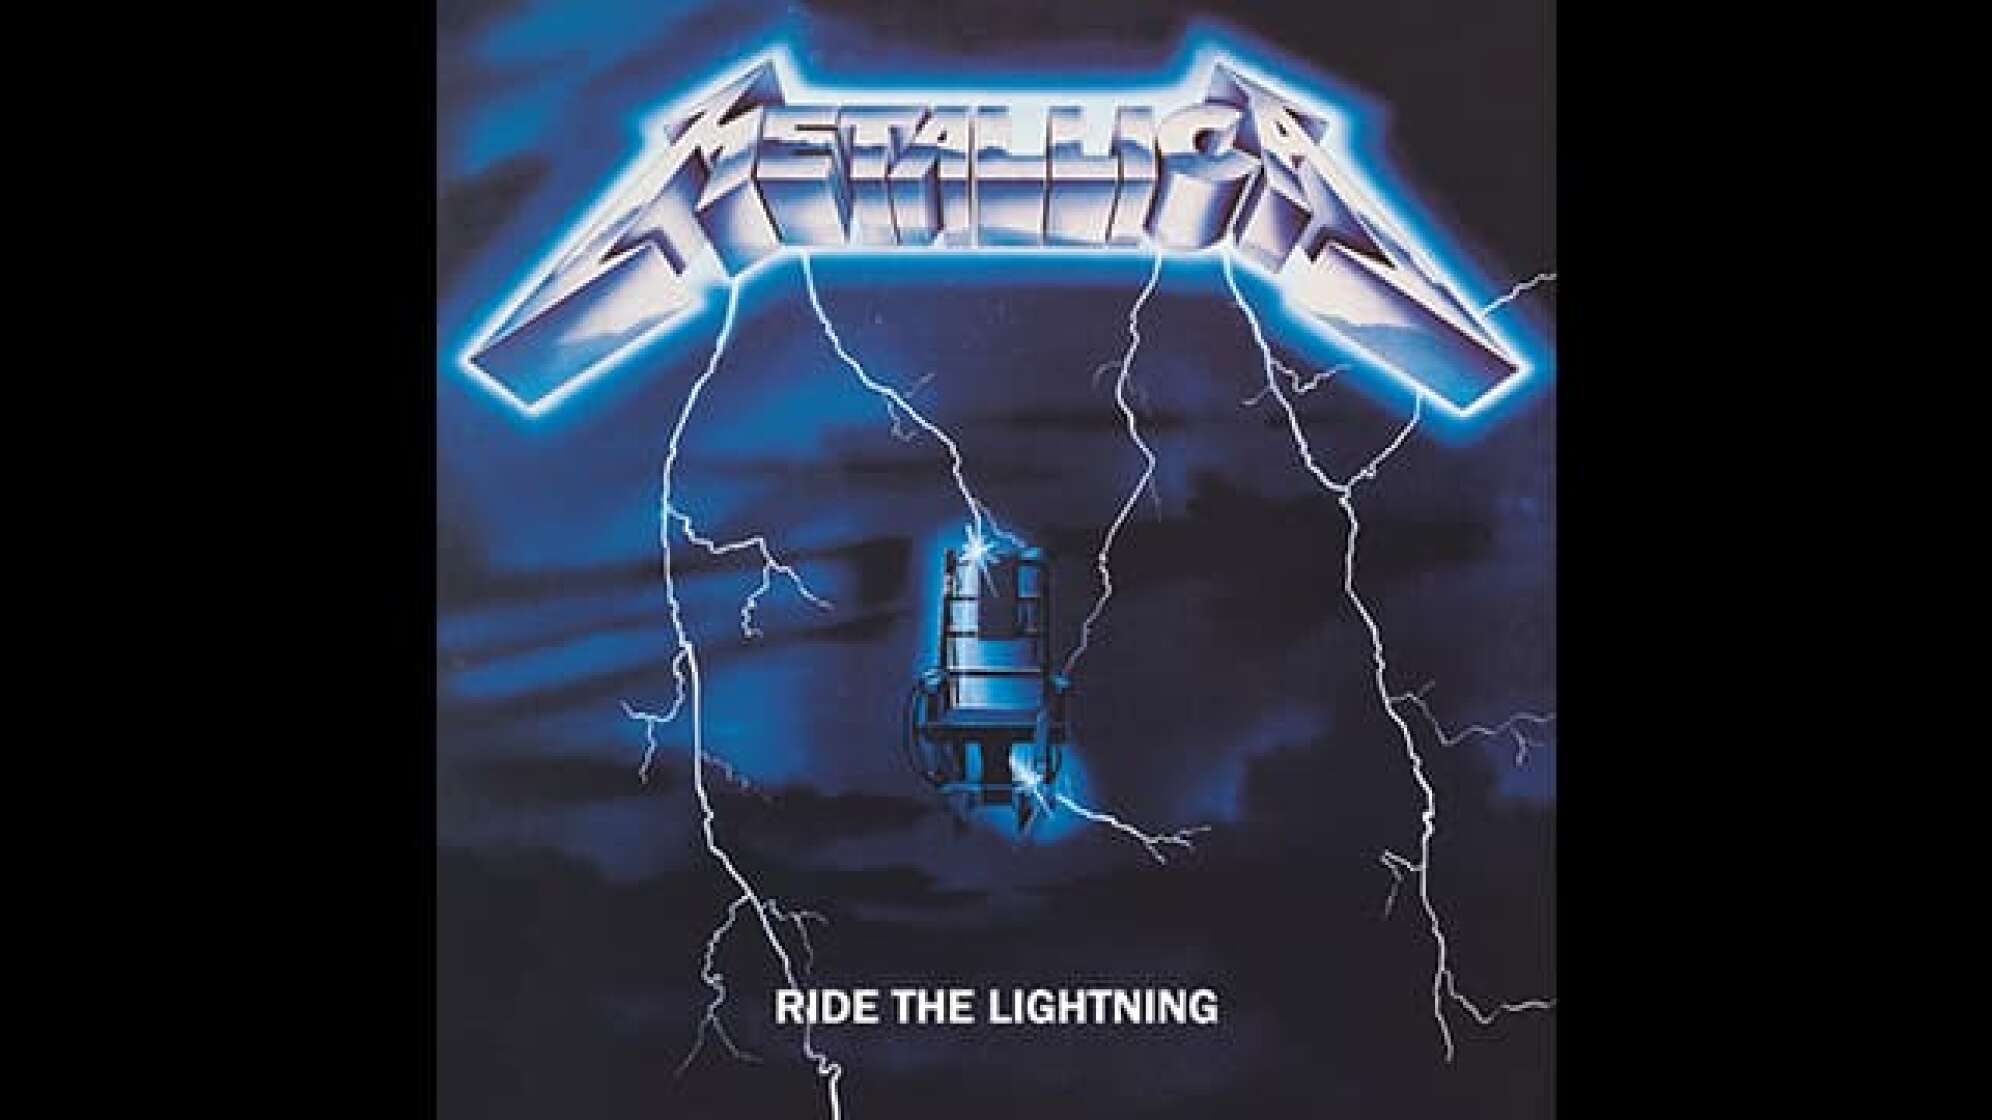 Album-Cover Metallica "Ride the Lightning"